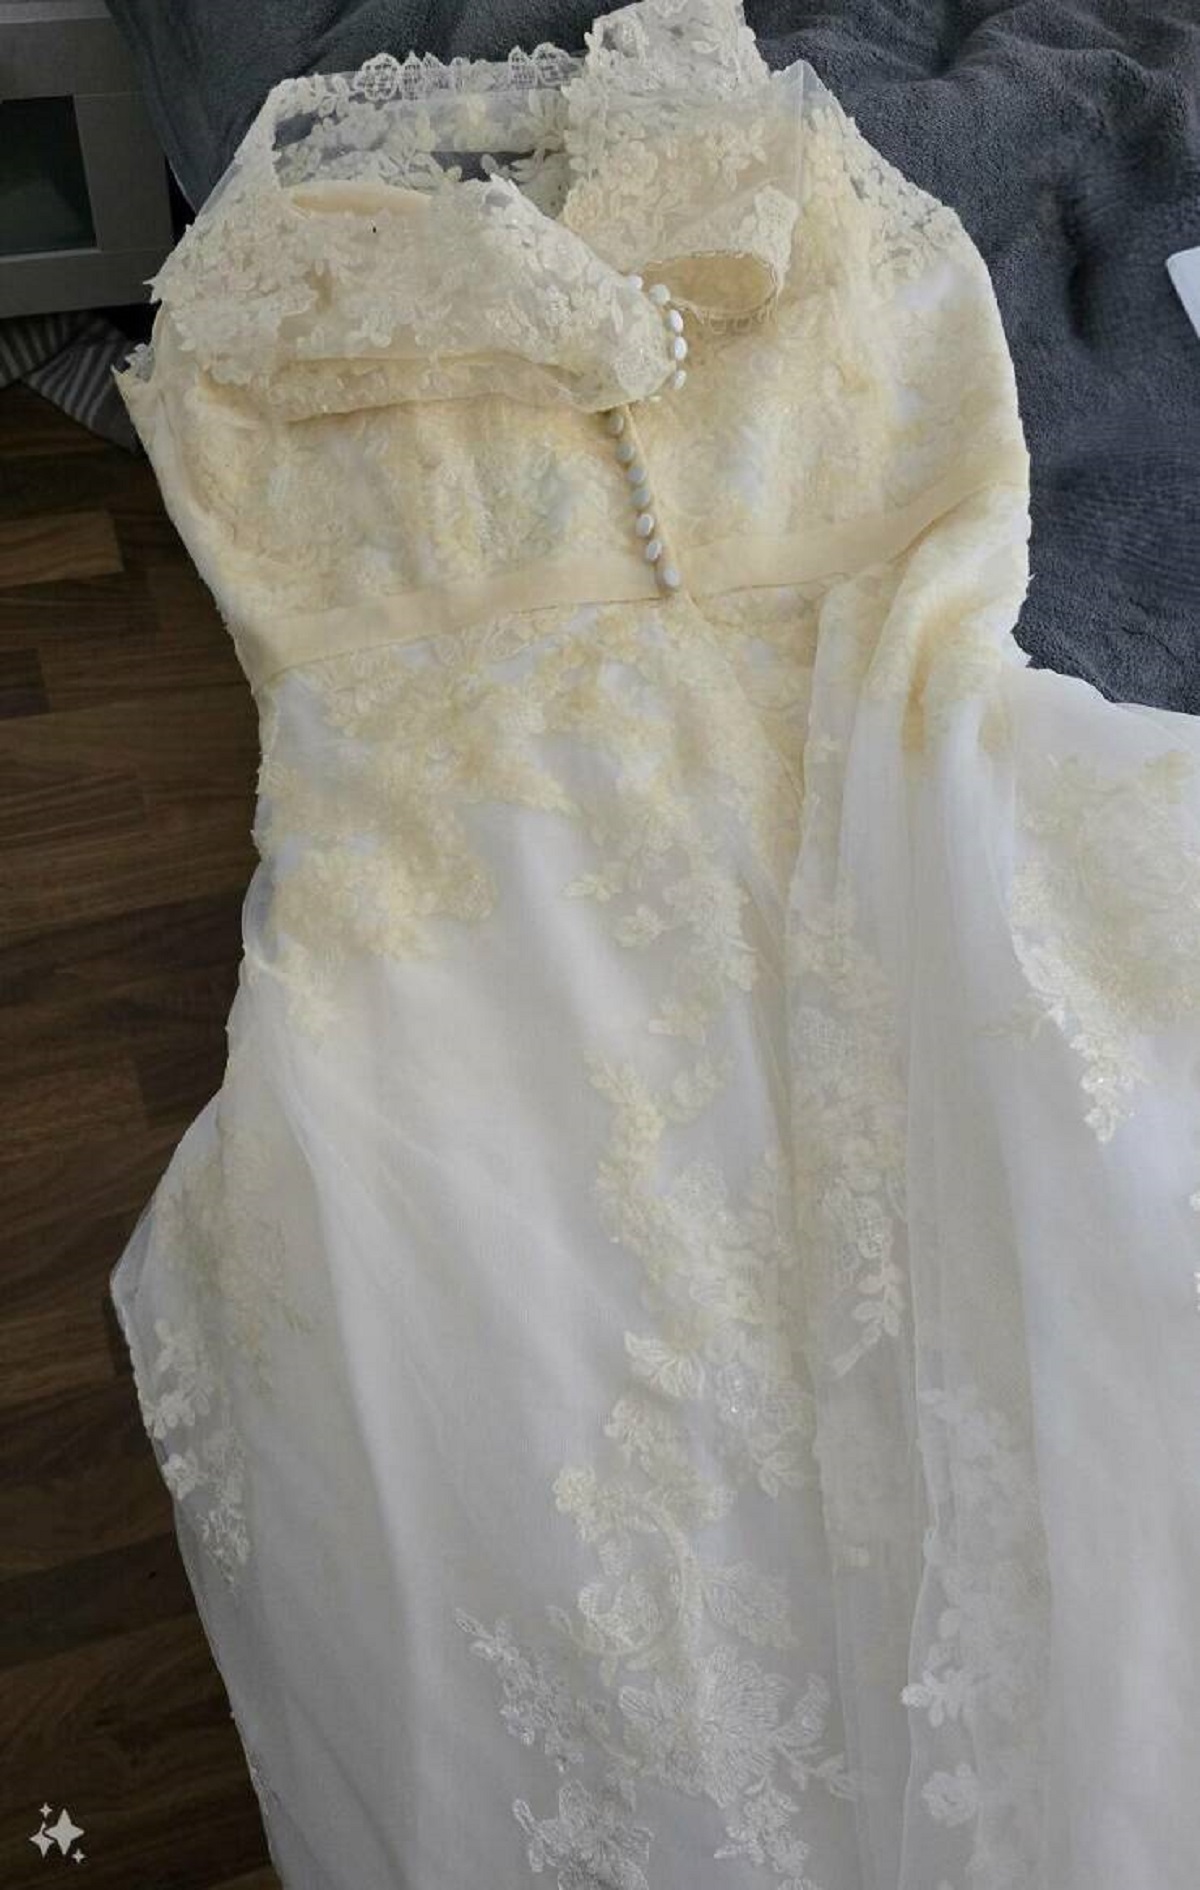 "Motor oil stain on wedding dress. 2 weeks pre wedding. Help?!"